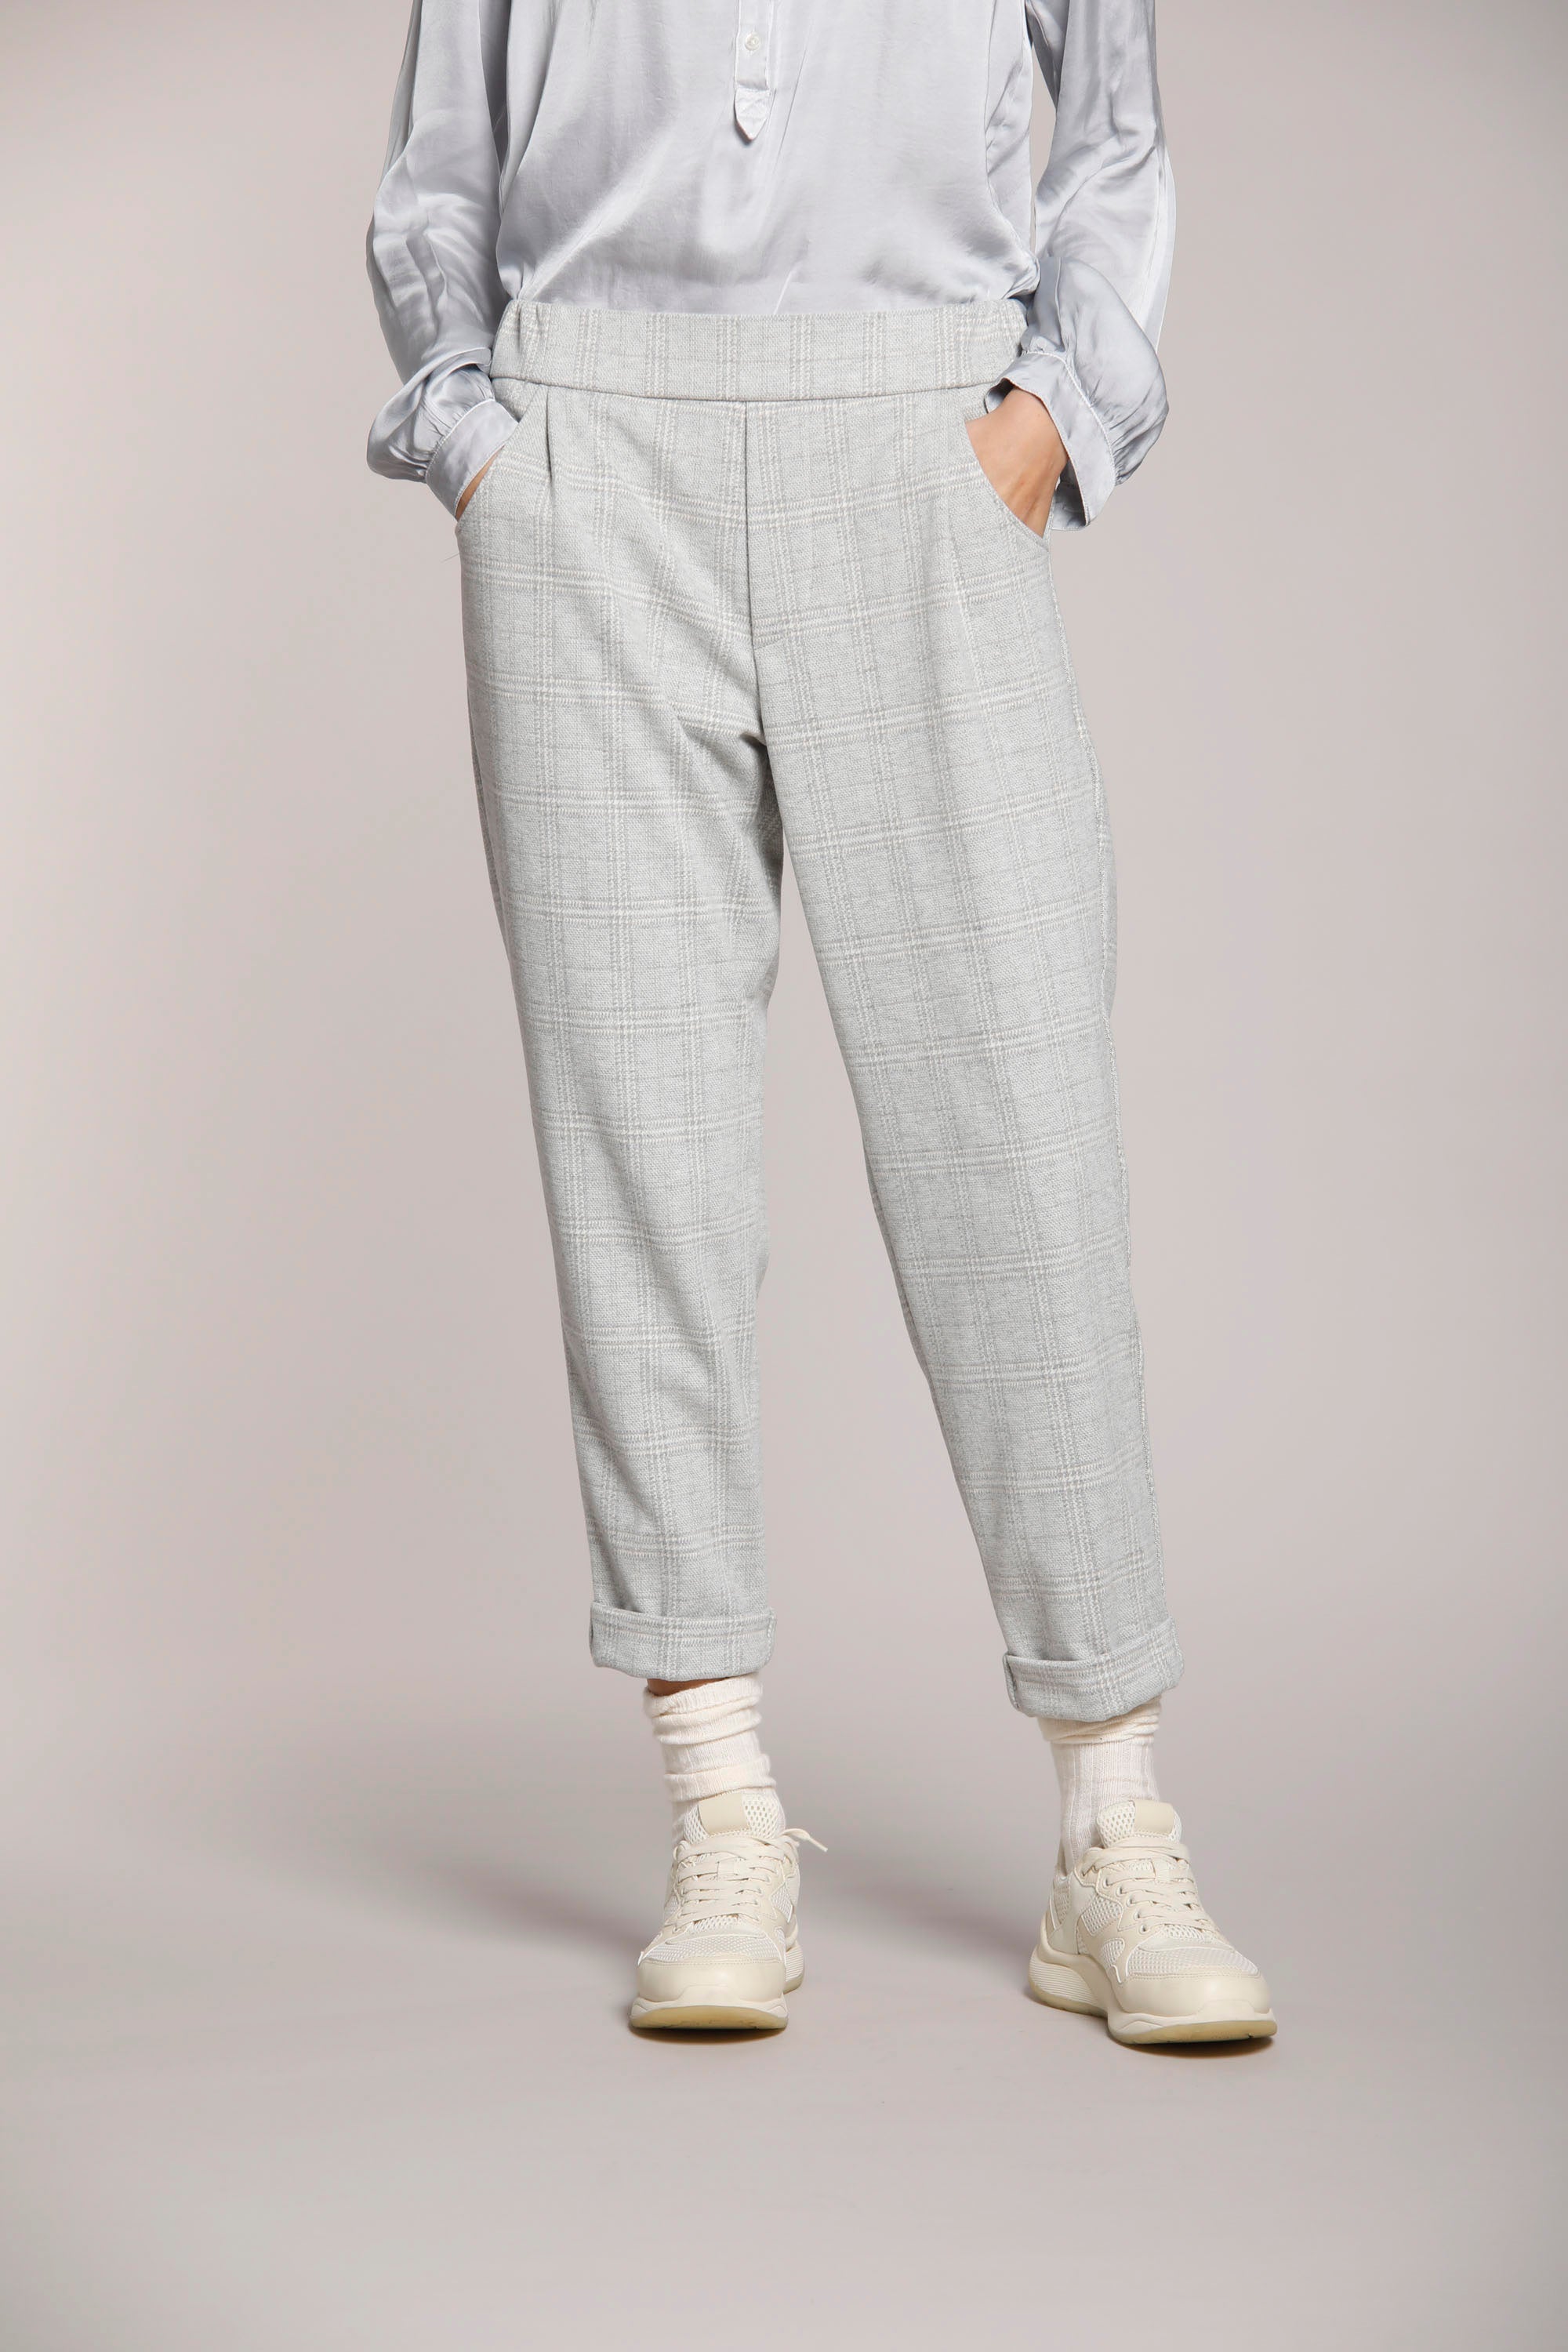 Immagine 1 di pantalone chino donna in jersey, con pattern galles, colore grgio chiaro, modello Easy Jogger di Mason's